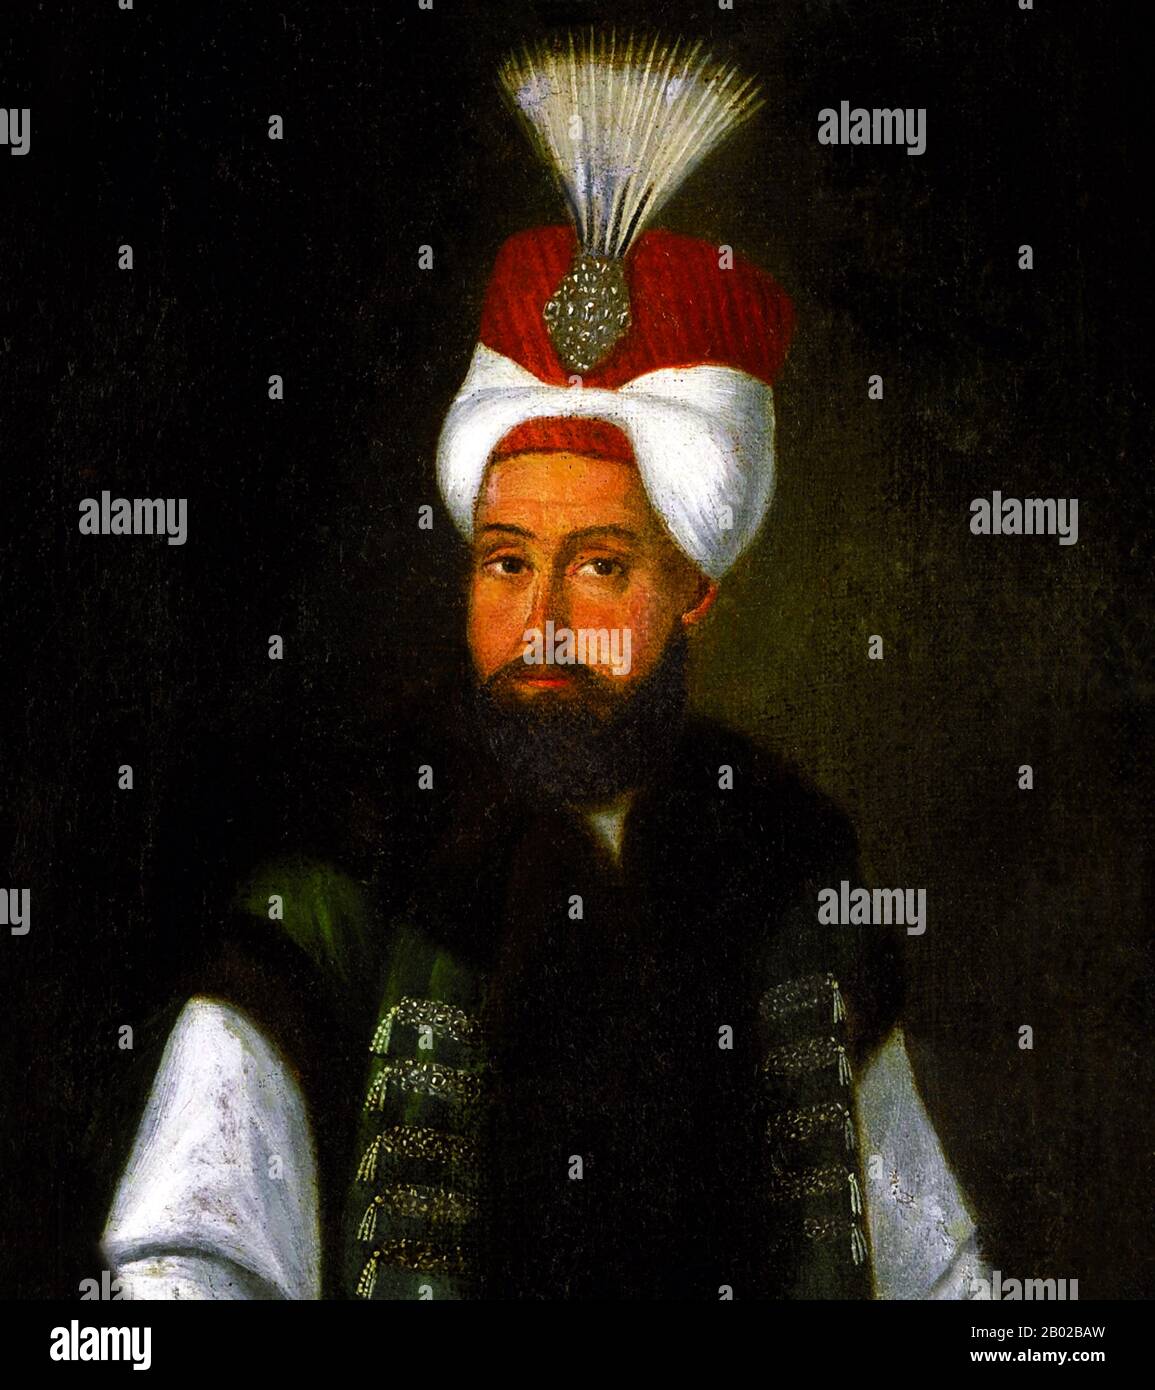 Selim III (turco otomano: سليم ثالث Selīm-i sālis) (24 de diciembre de 1761 – 28 o 29 de julio de 1808) fue el sultán reformista del Imperio Otomano de 1789 a 1807. Los Janisarios eventualmente lo depusieron y encarcelaron, y colocaron a su primo Mustafa en el trono como Mustafa IV Foto de stock